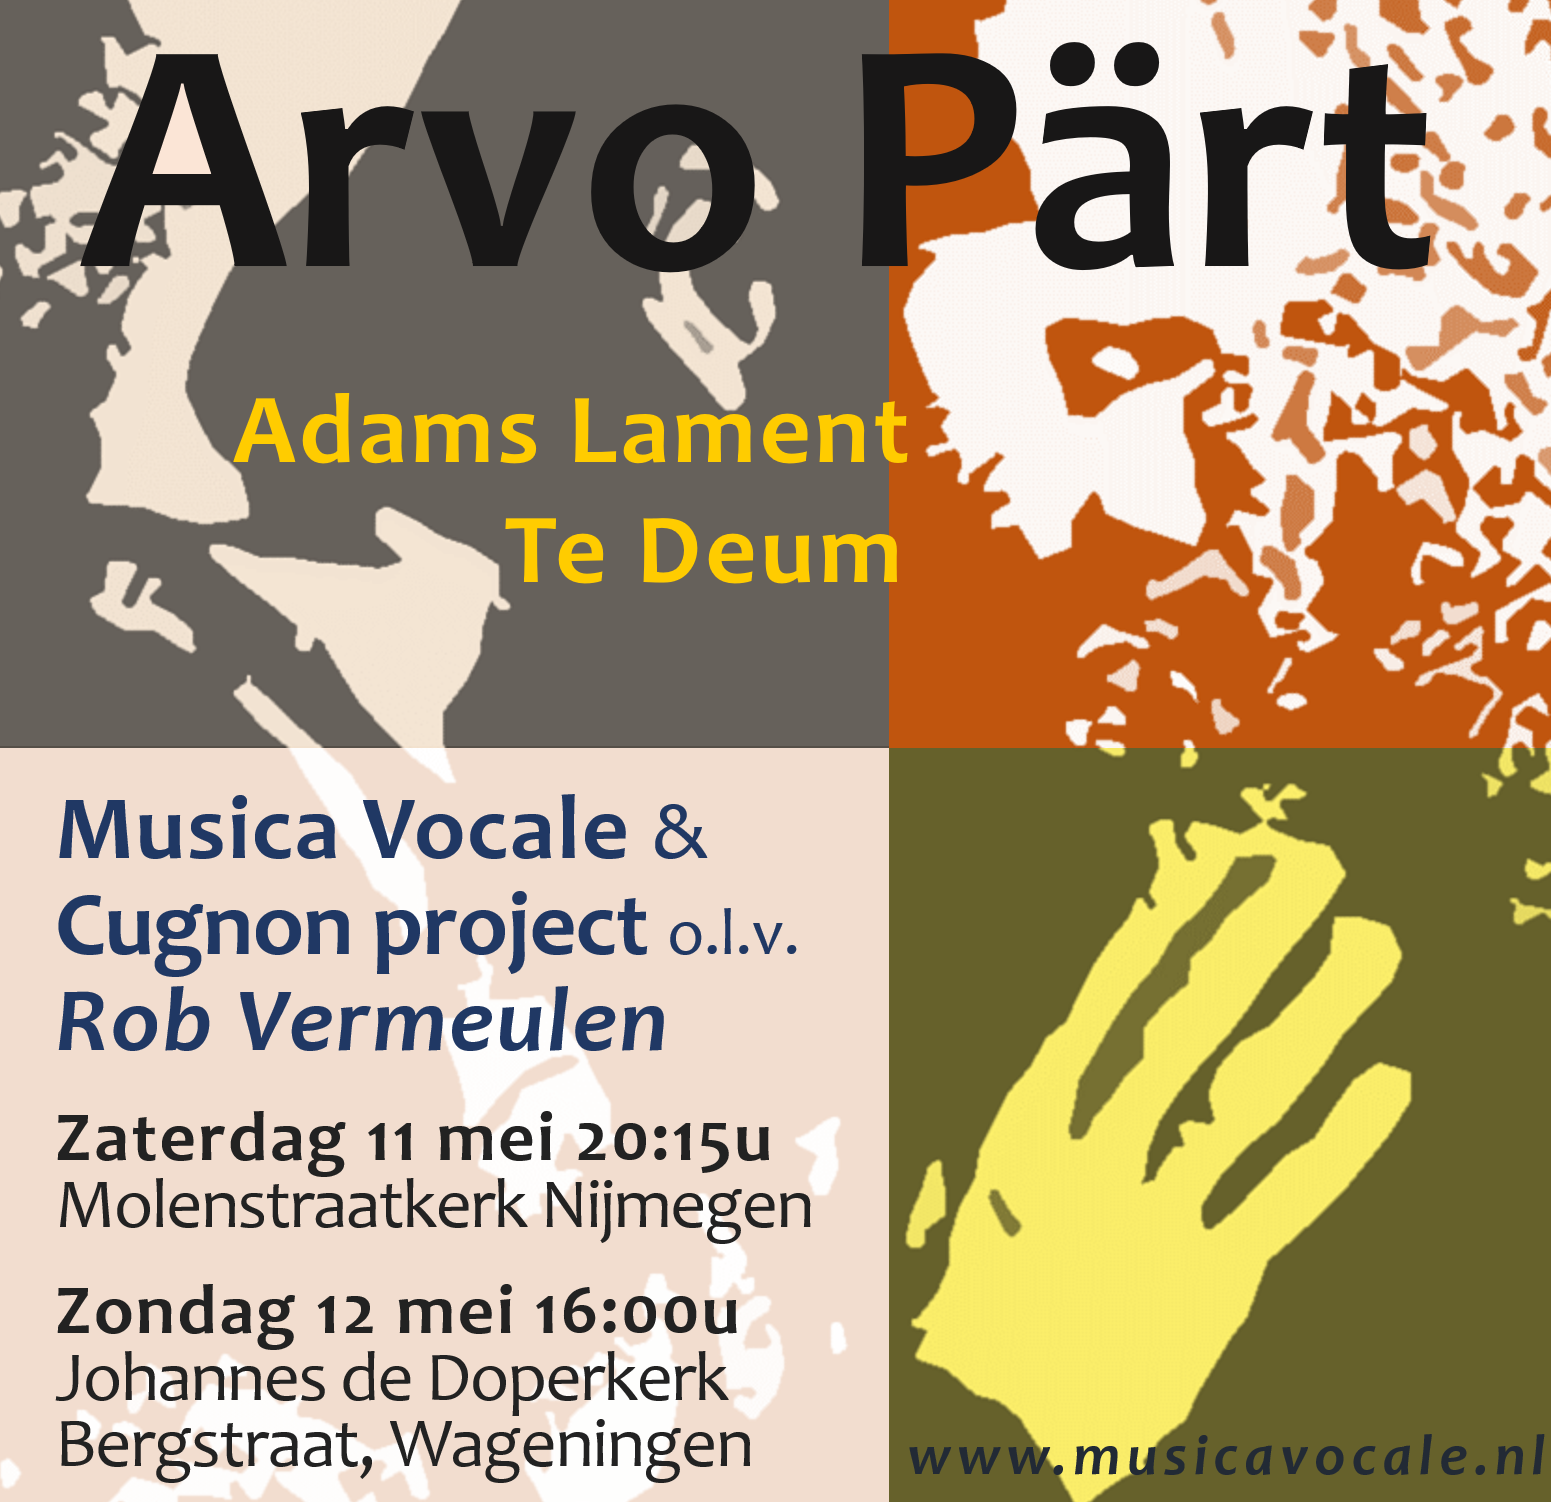 Mei 2019: Arvo Pärt: Te Deum & Adam’s Lament – Musica Vocale